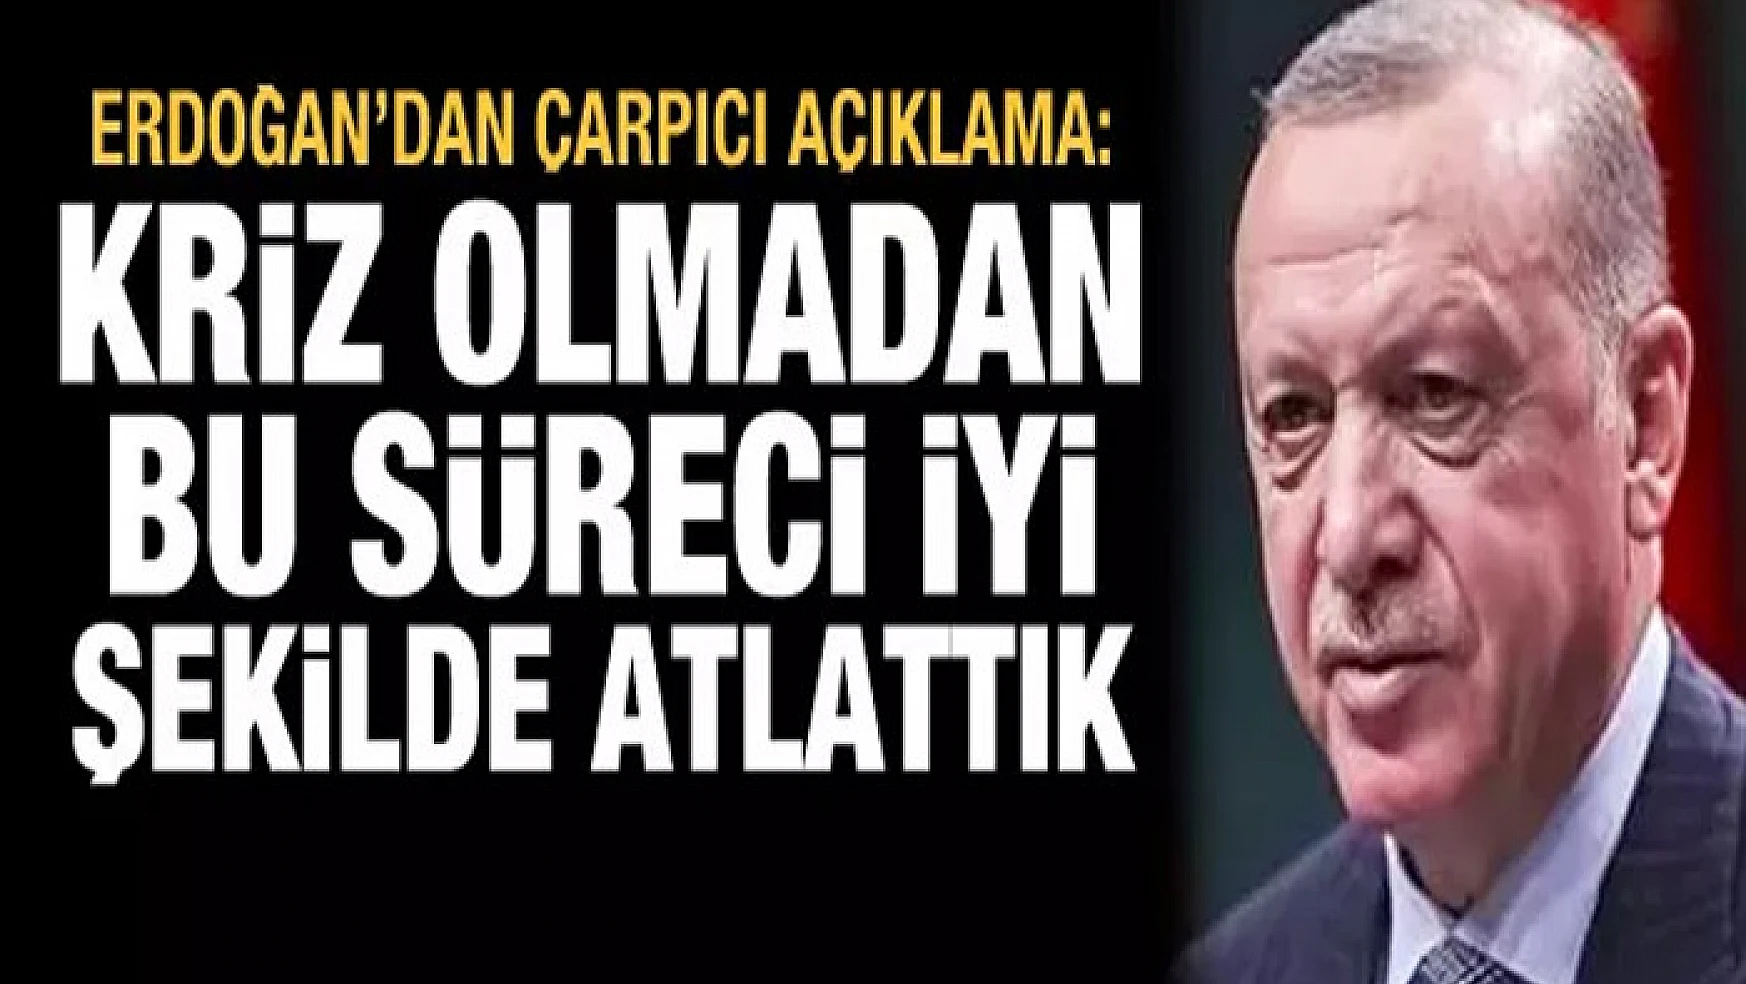 Erdoğan'dan çarpıcı sözler: Kriz olmadan bu süreci atlattık